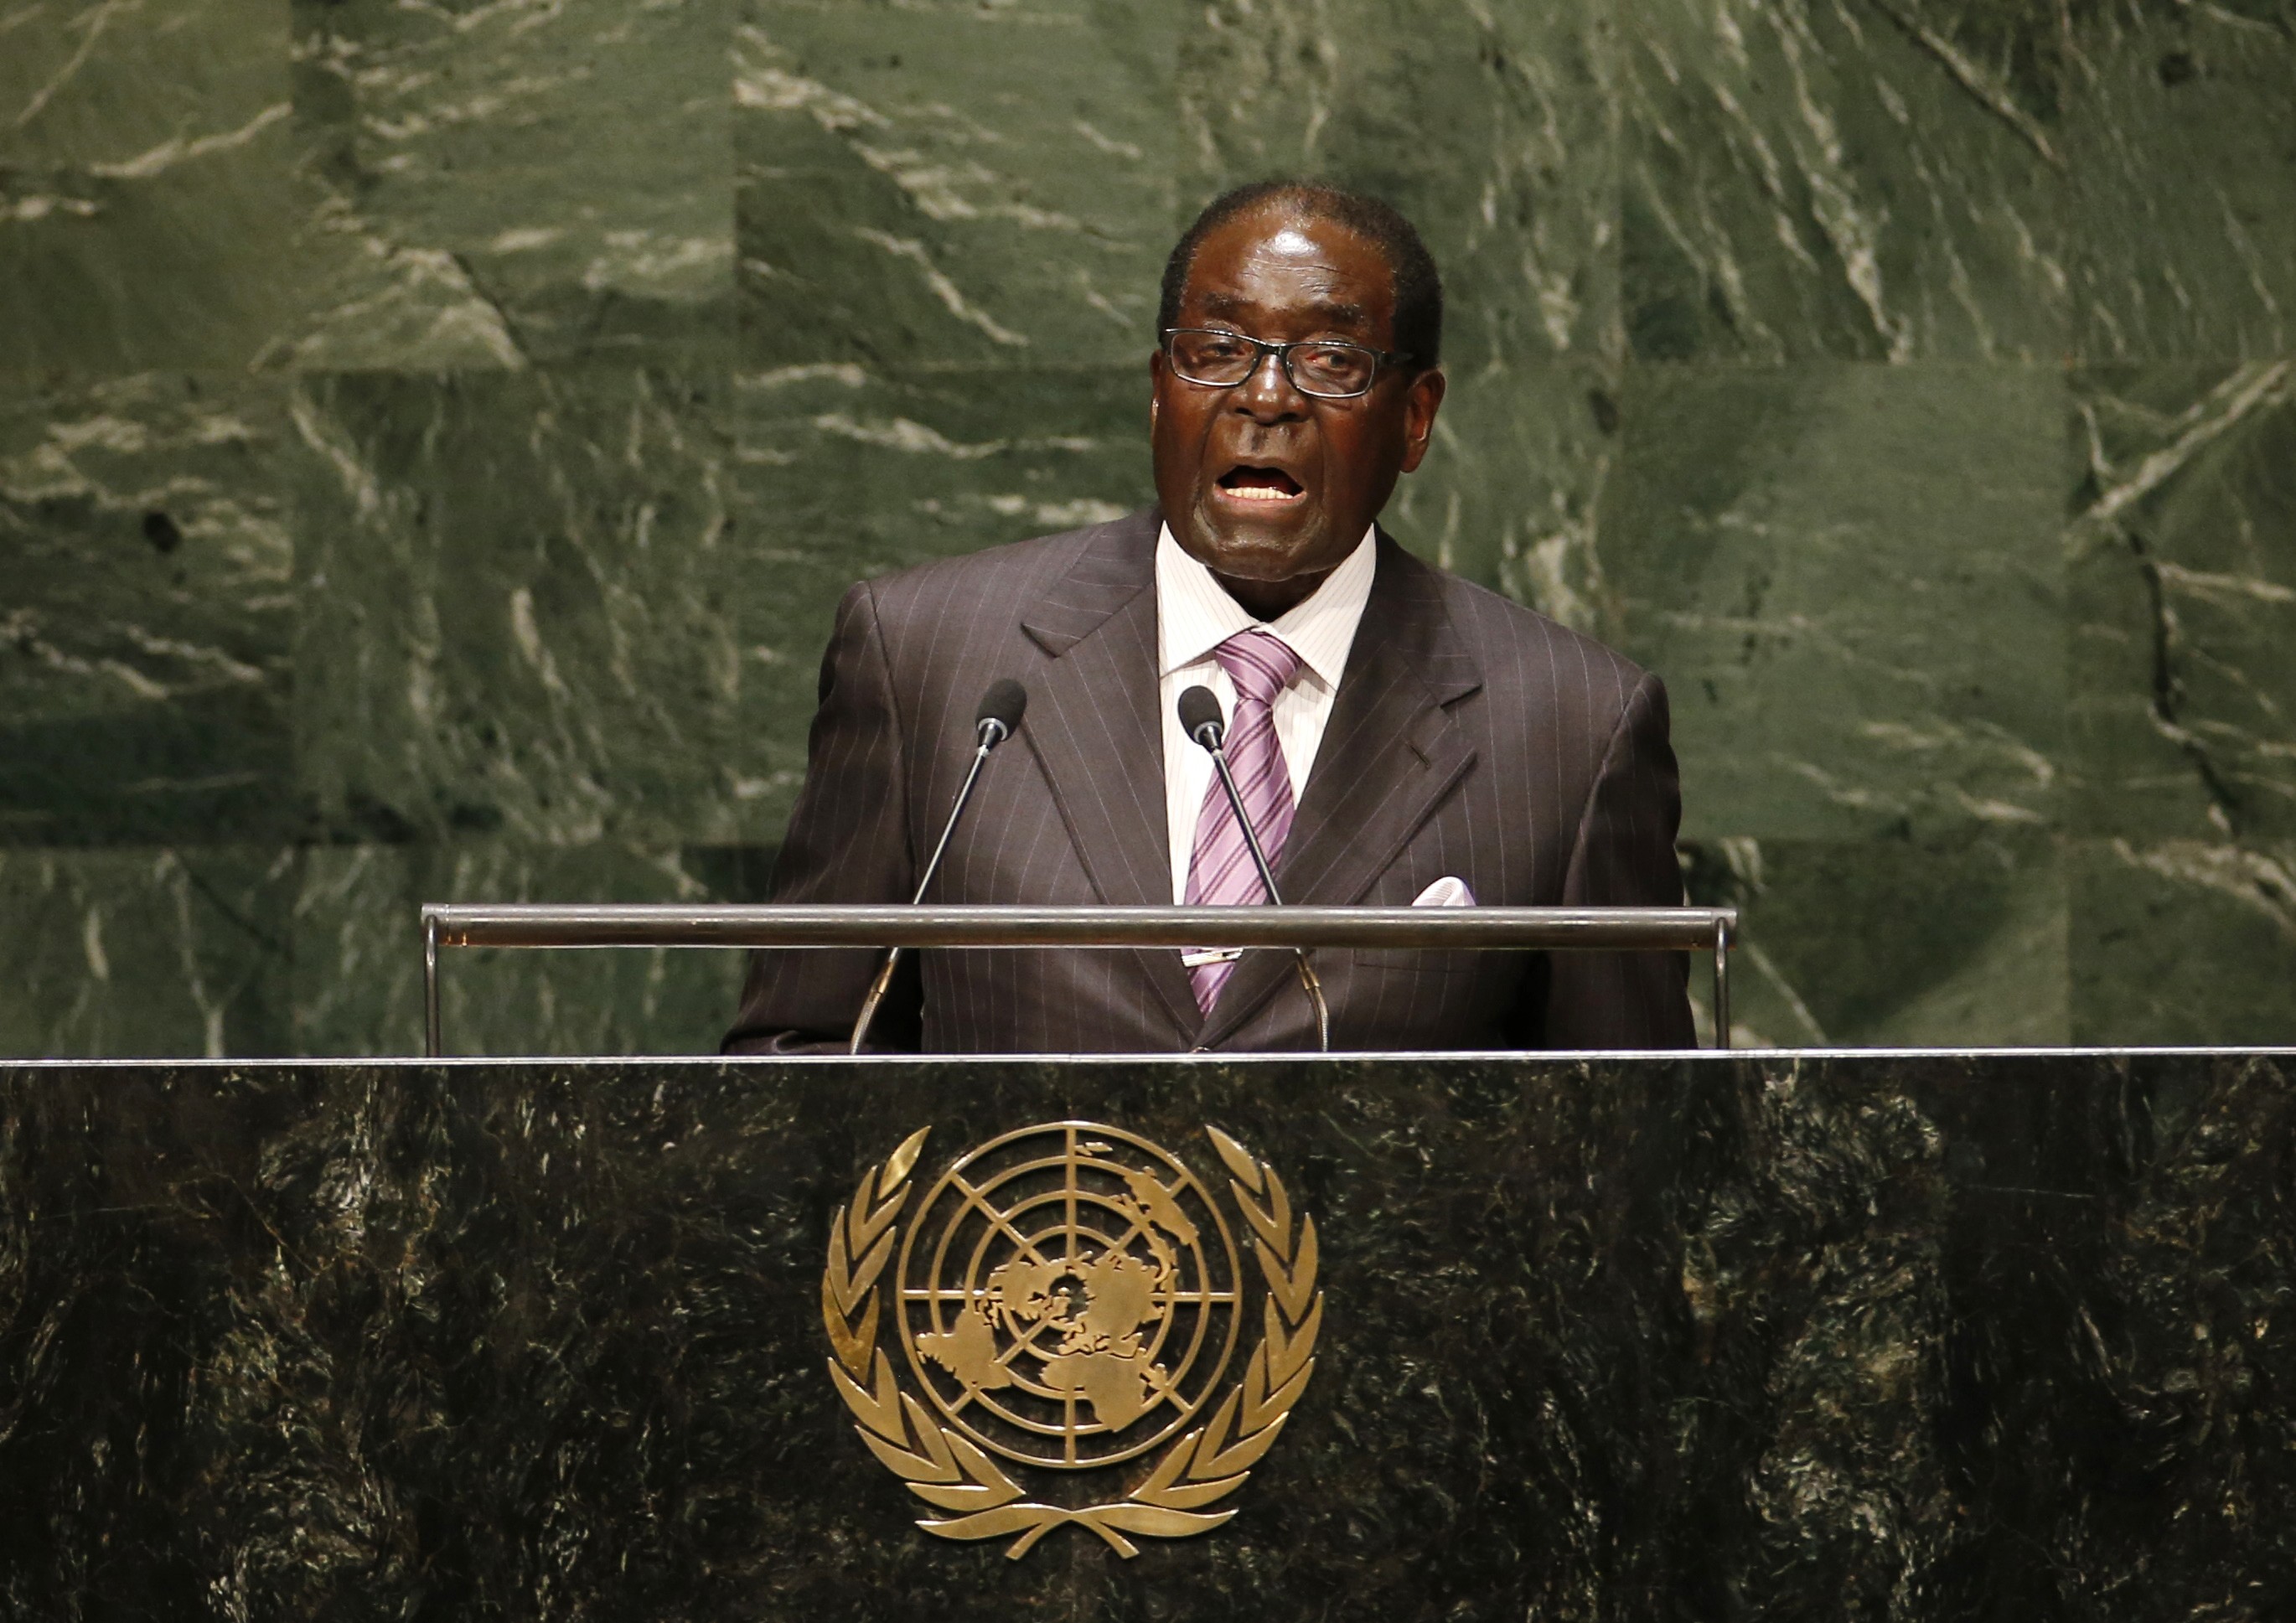 Llamó a los países hostiles con Zimbabue a crear relaciones basadas en una 